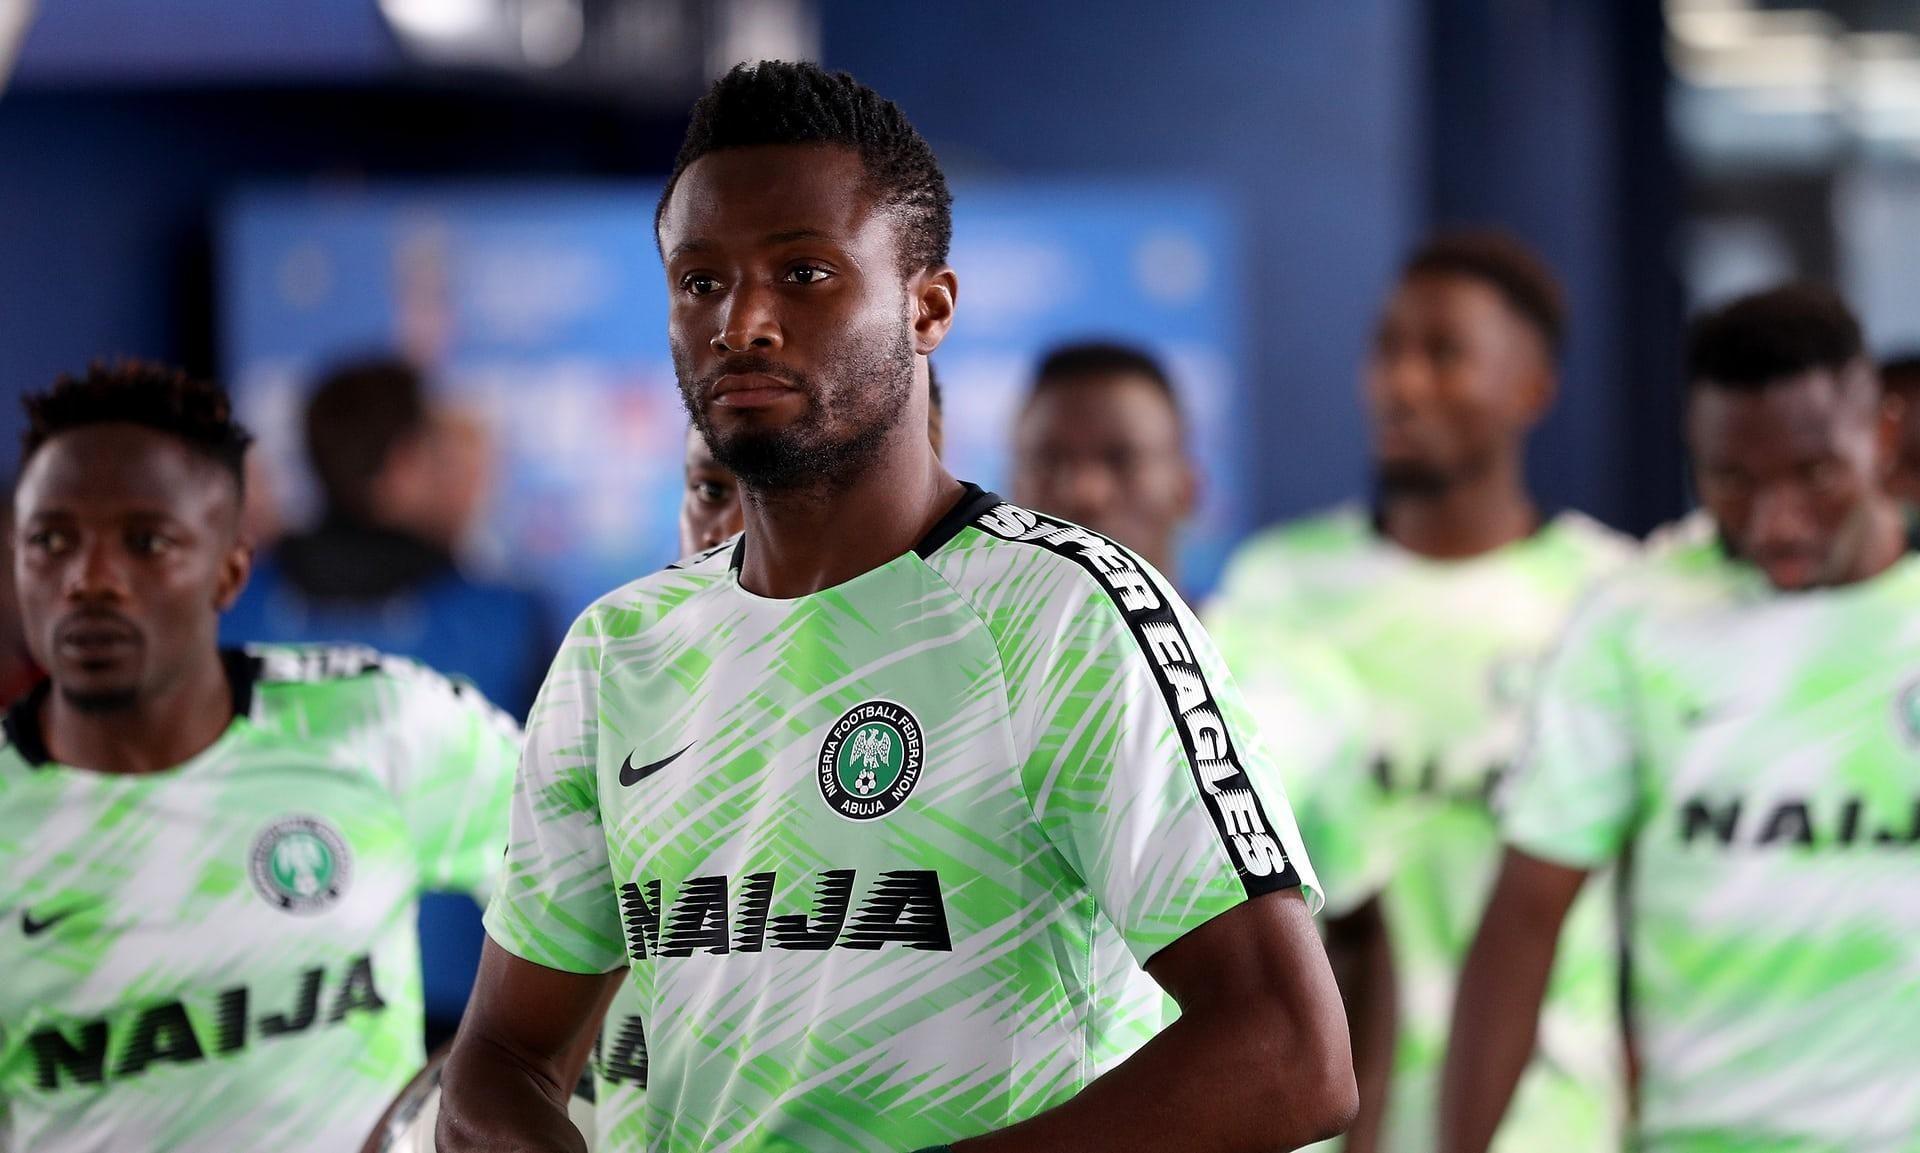 Отца капитана сборной Нигерии похитили перед матчем Чемпионата мира против Аргентины